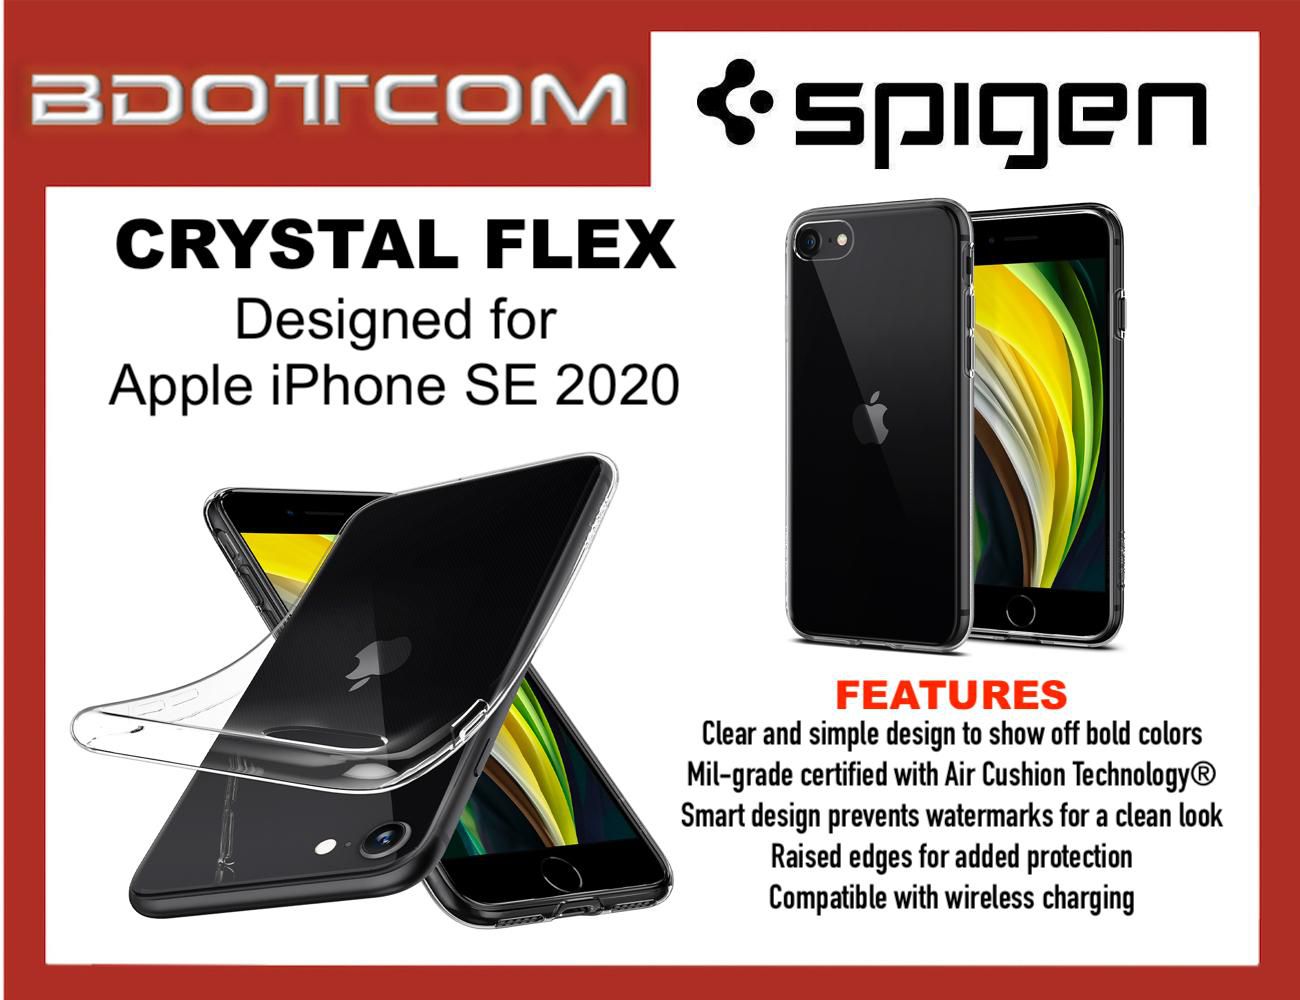 Original Spigen Crystal Flex Protective Cover Case for Apple iPhone SE 2020